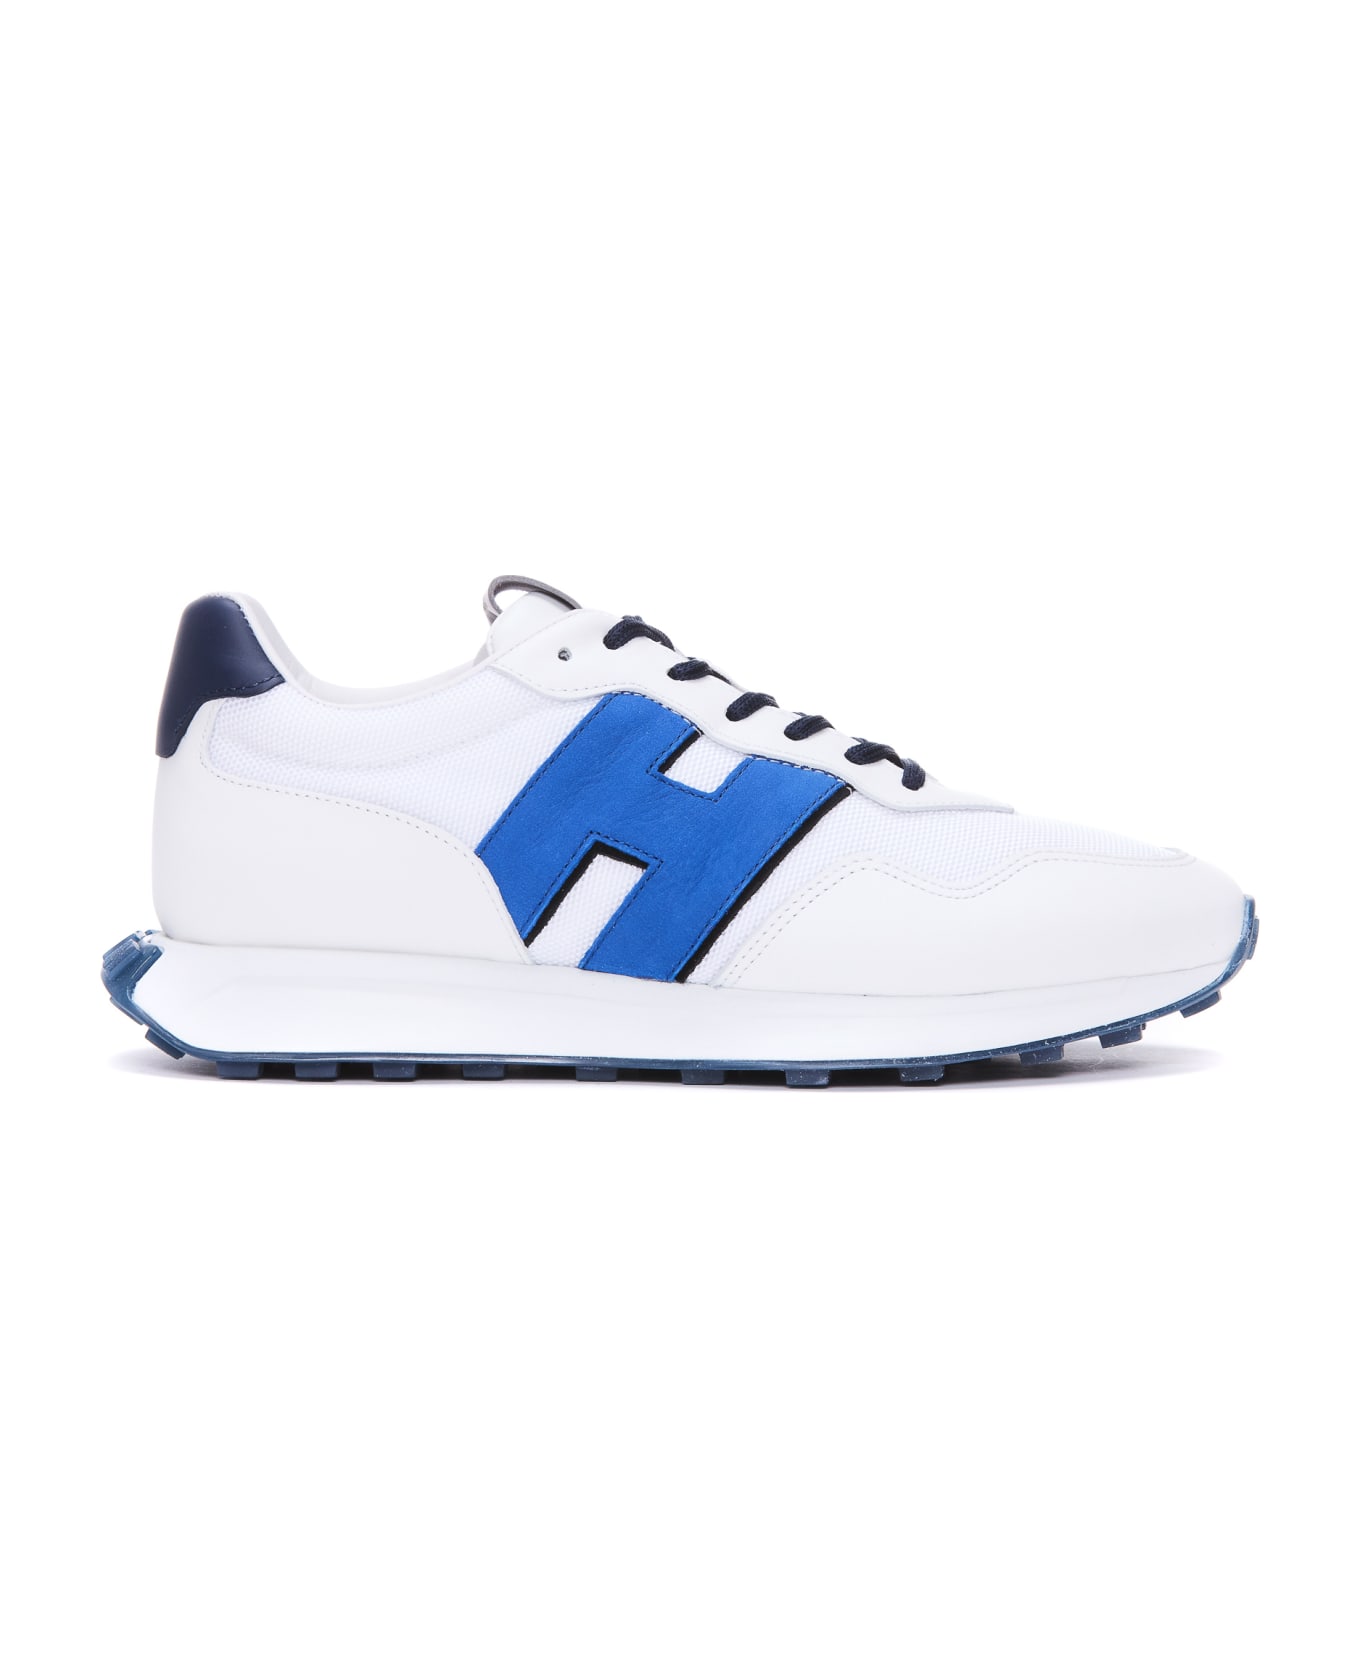 Hogan H601 Sneakers - MULTICOLOR